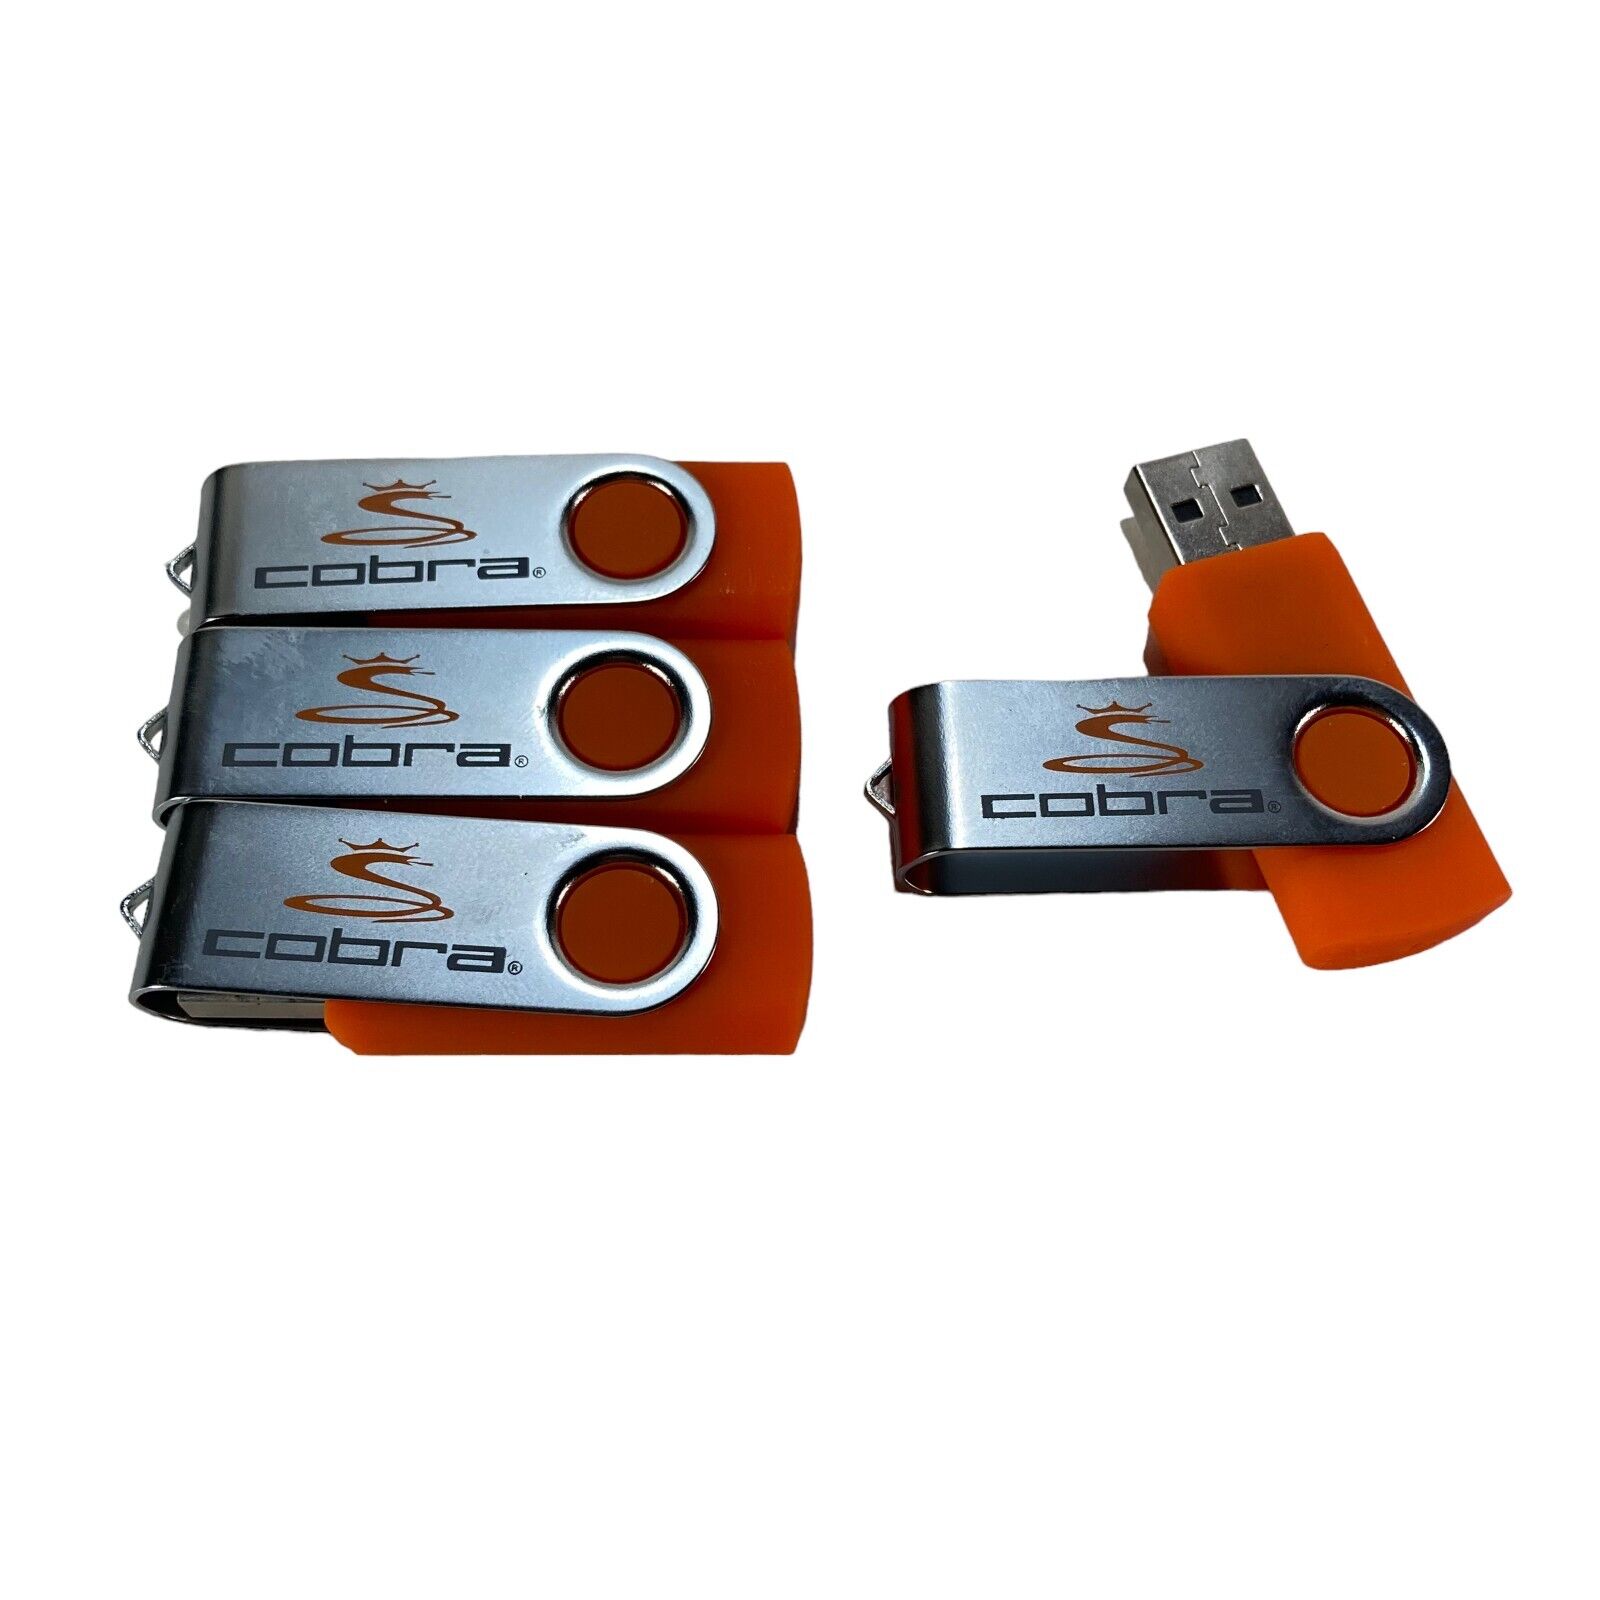 4PC USB 2.0 2gb Thumb Drive Orange Cobra Golf